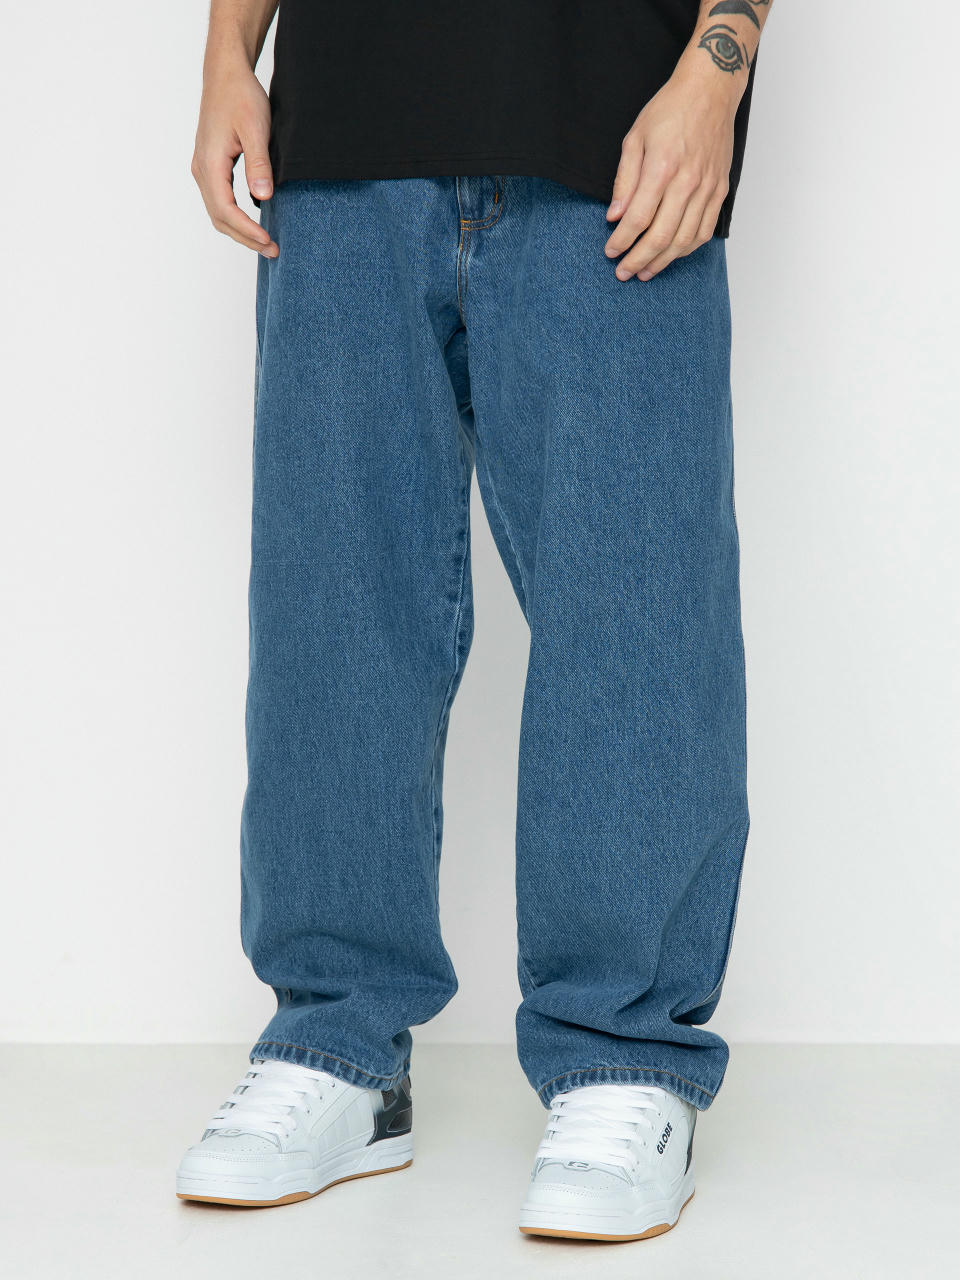 Raw Hide Skateboards OG Jeans Pants (denim blue)